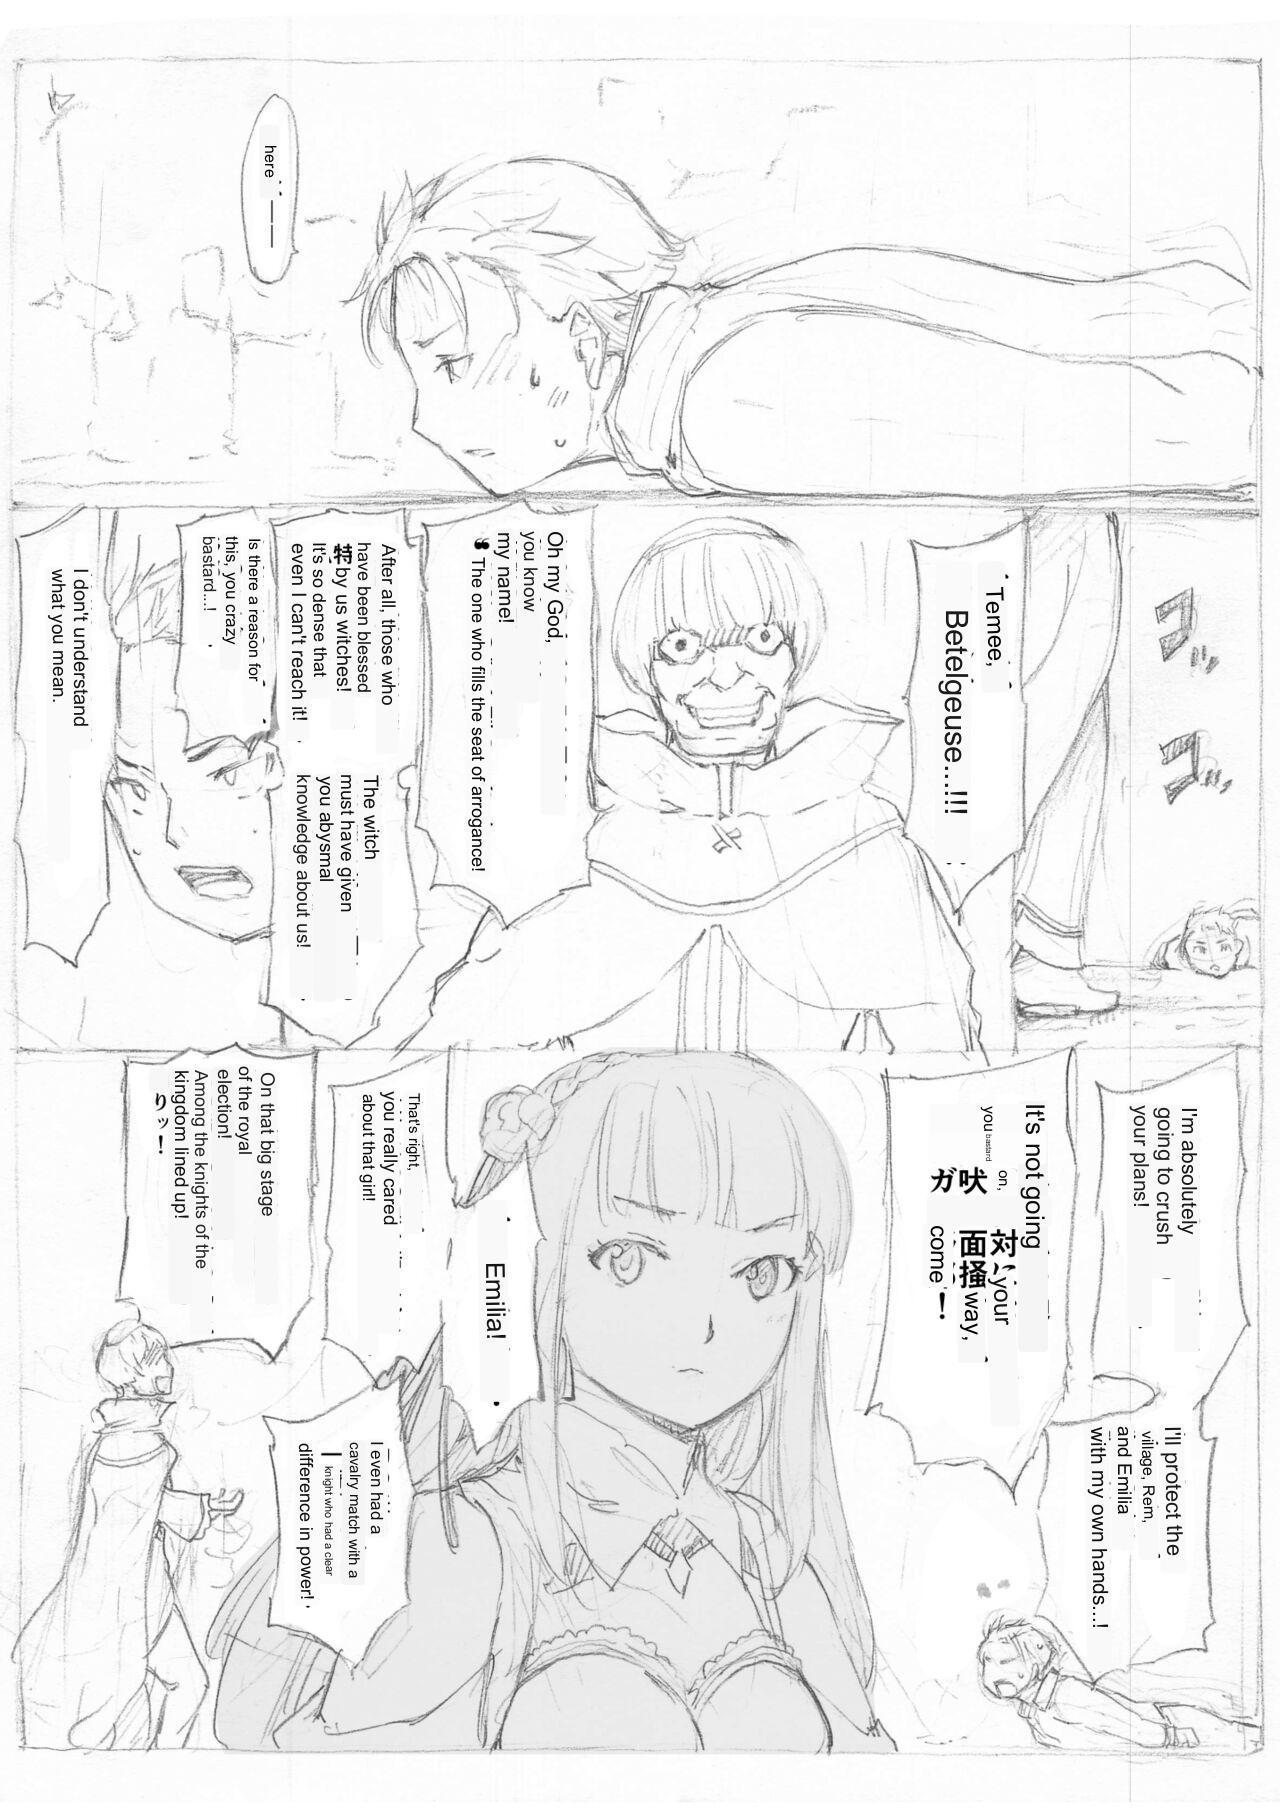 Mexico [Fujiwara Shunichi] Emilia Kumo Ito Kousoku Manga (Re: Zero kara Hajimeru Isekai Seikatsu) google translate - Original Interracial - Page 9